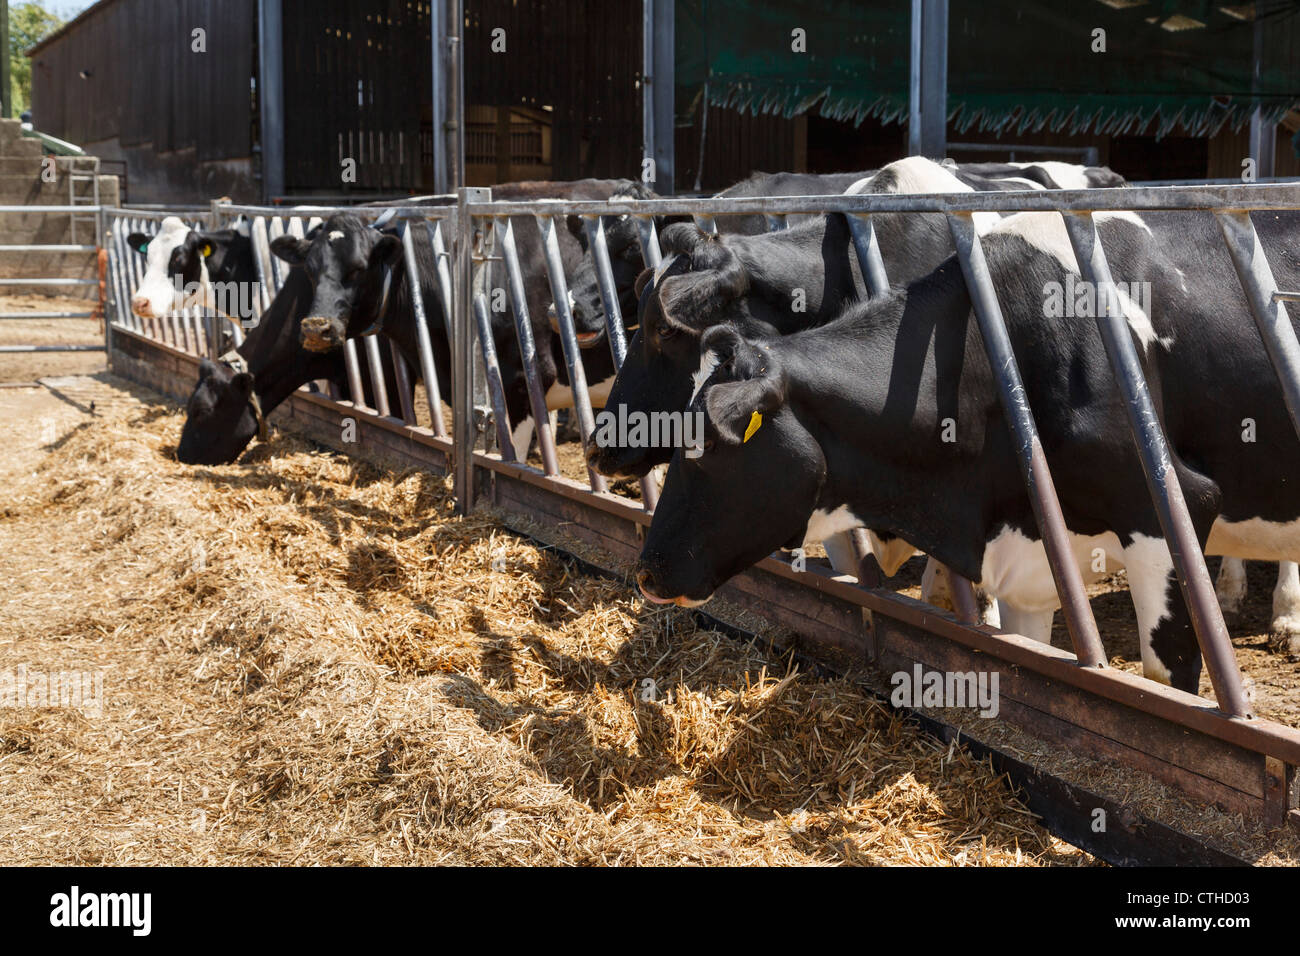 La scène agricole du troupeau de vaches laitières frisésiennes noires et blanches qui se nourrissent de foin à travers les barres dans un hangar de vache sur une ferme agricole de Dorset Angleterre Royaume-Uni Banque D'Images